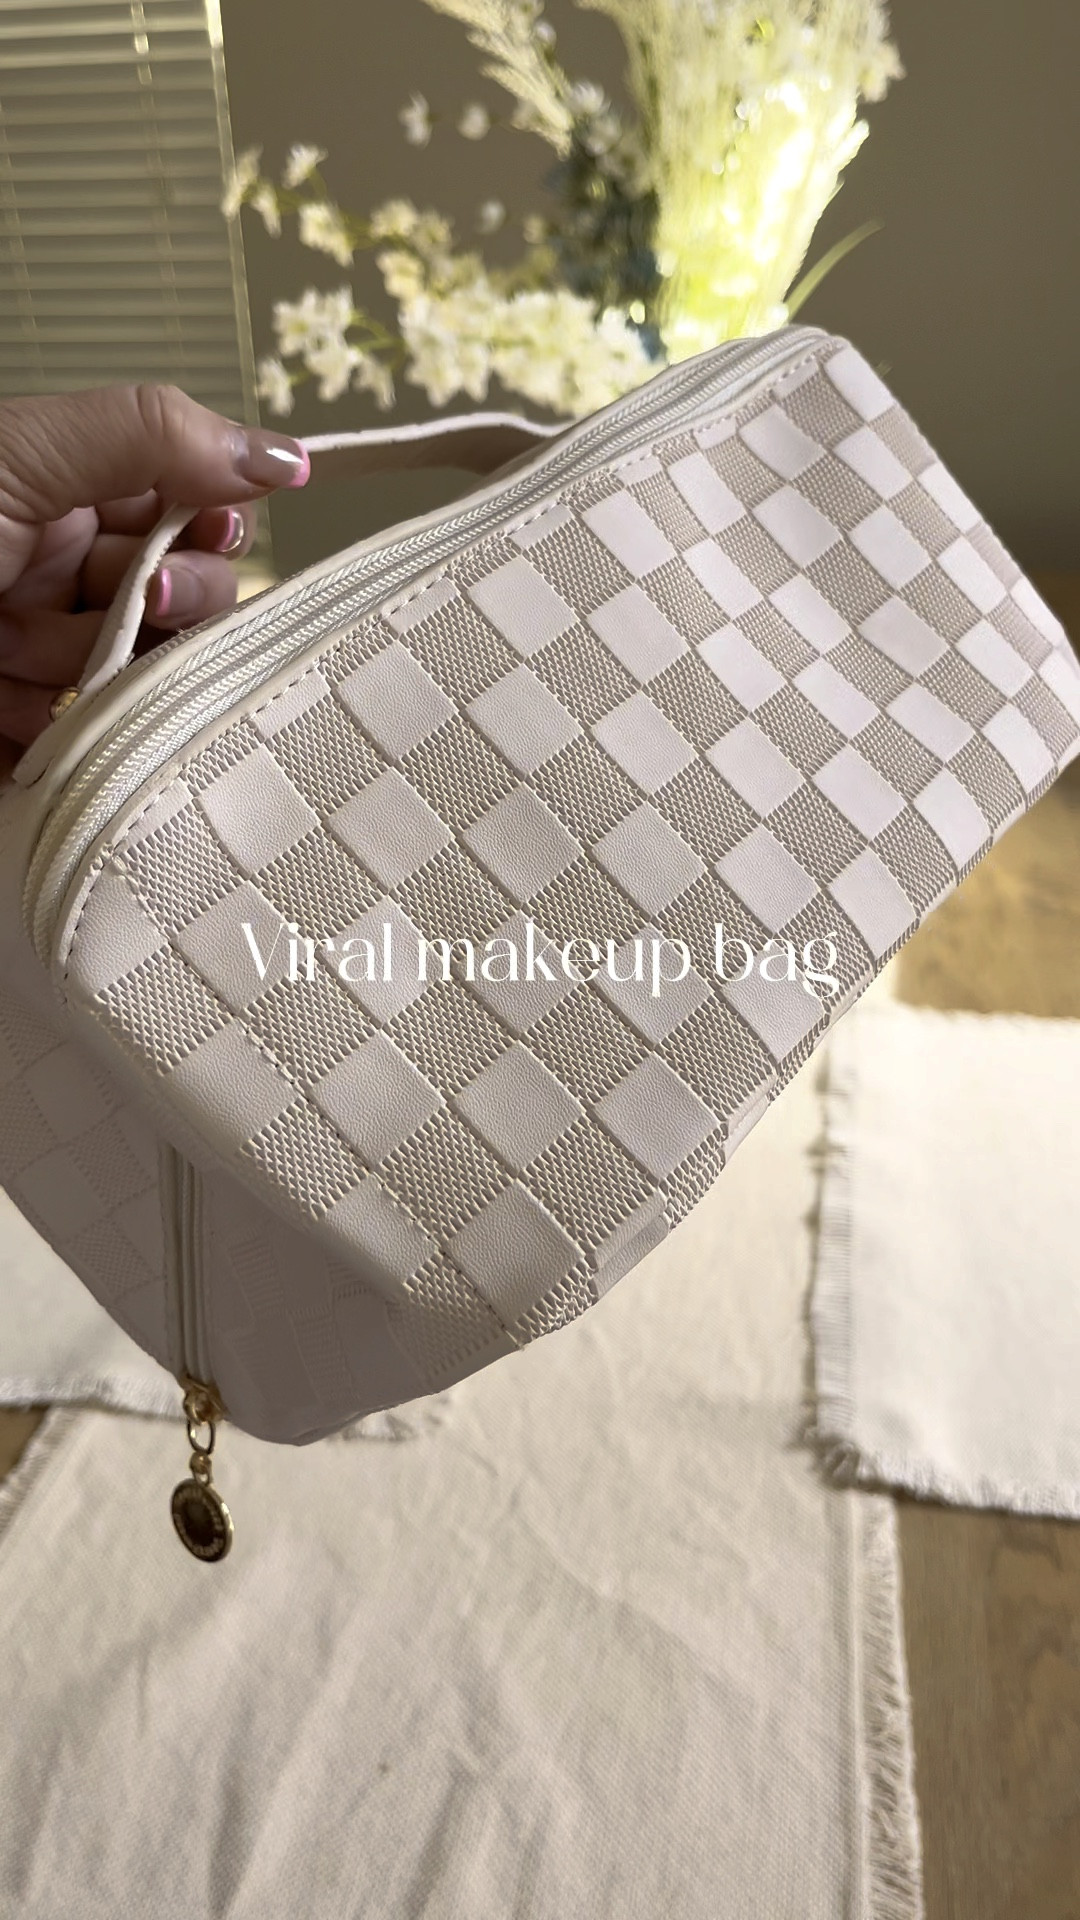  SOIDRAM Large Capacity Travel Cosmetic Bag Makeup Bag